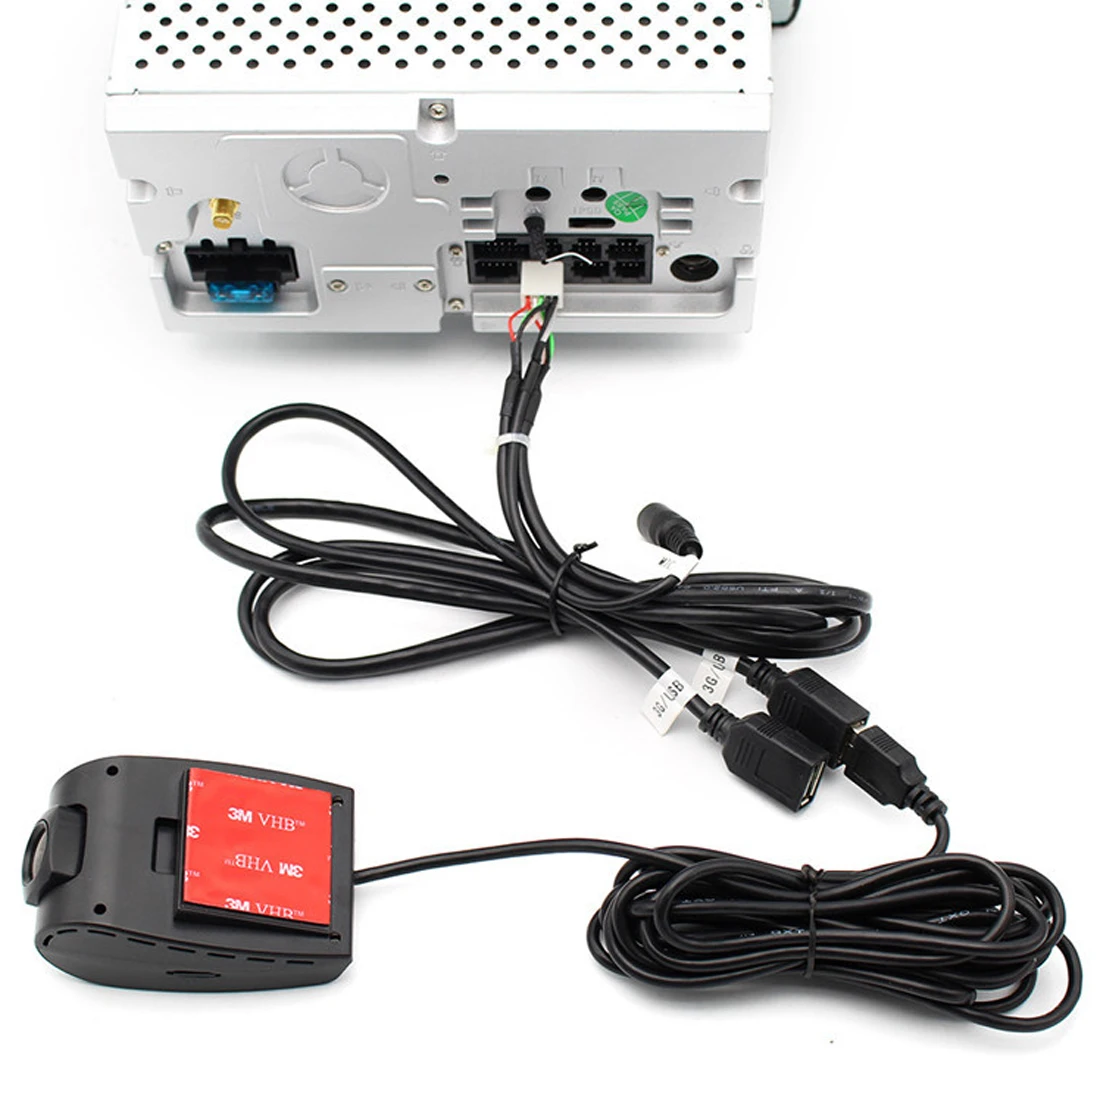 Камера регистратор для андроид магнитолы. USB car DVR. Видеорегистратор USB DVR. Юсб Адас ДВР. Adas USB автомобильный видеорегистратор.